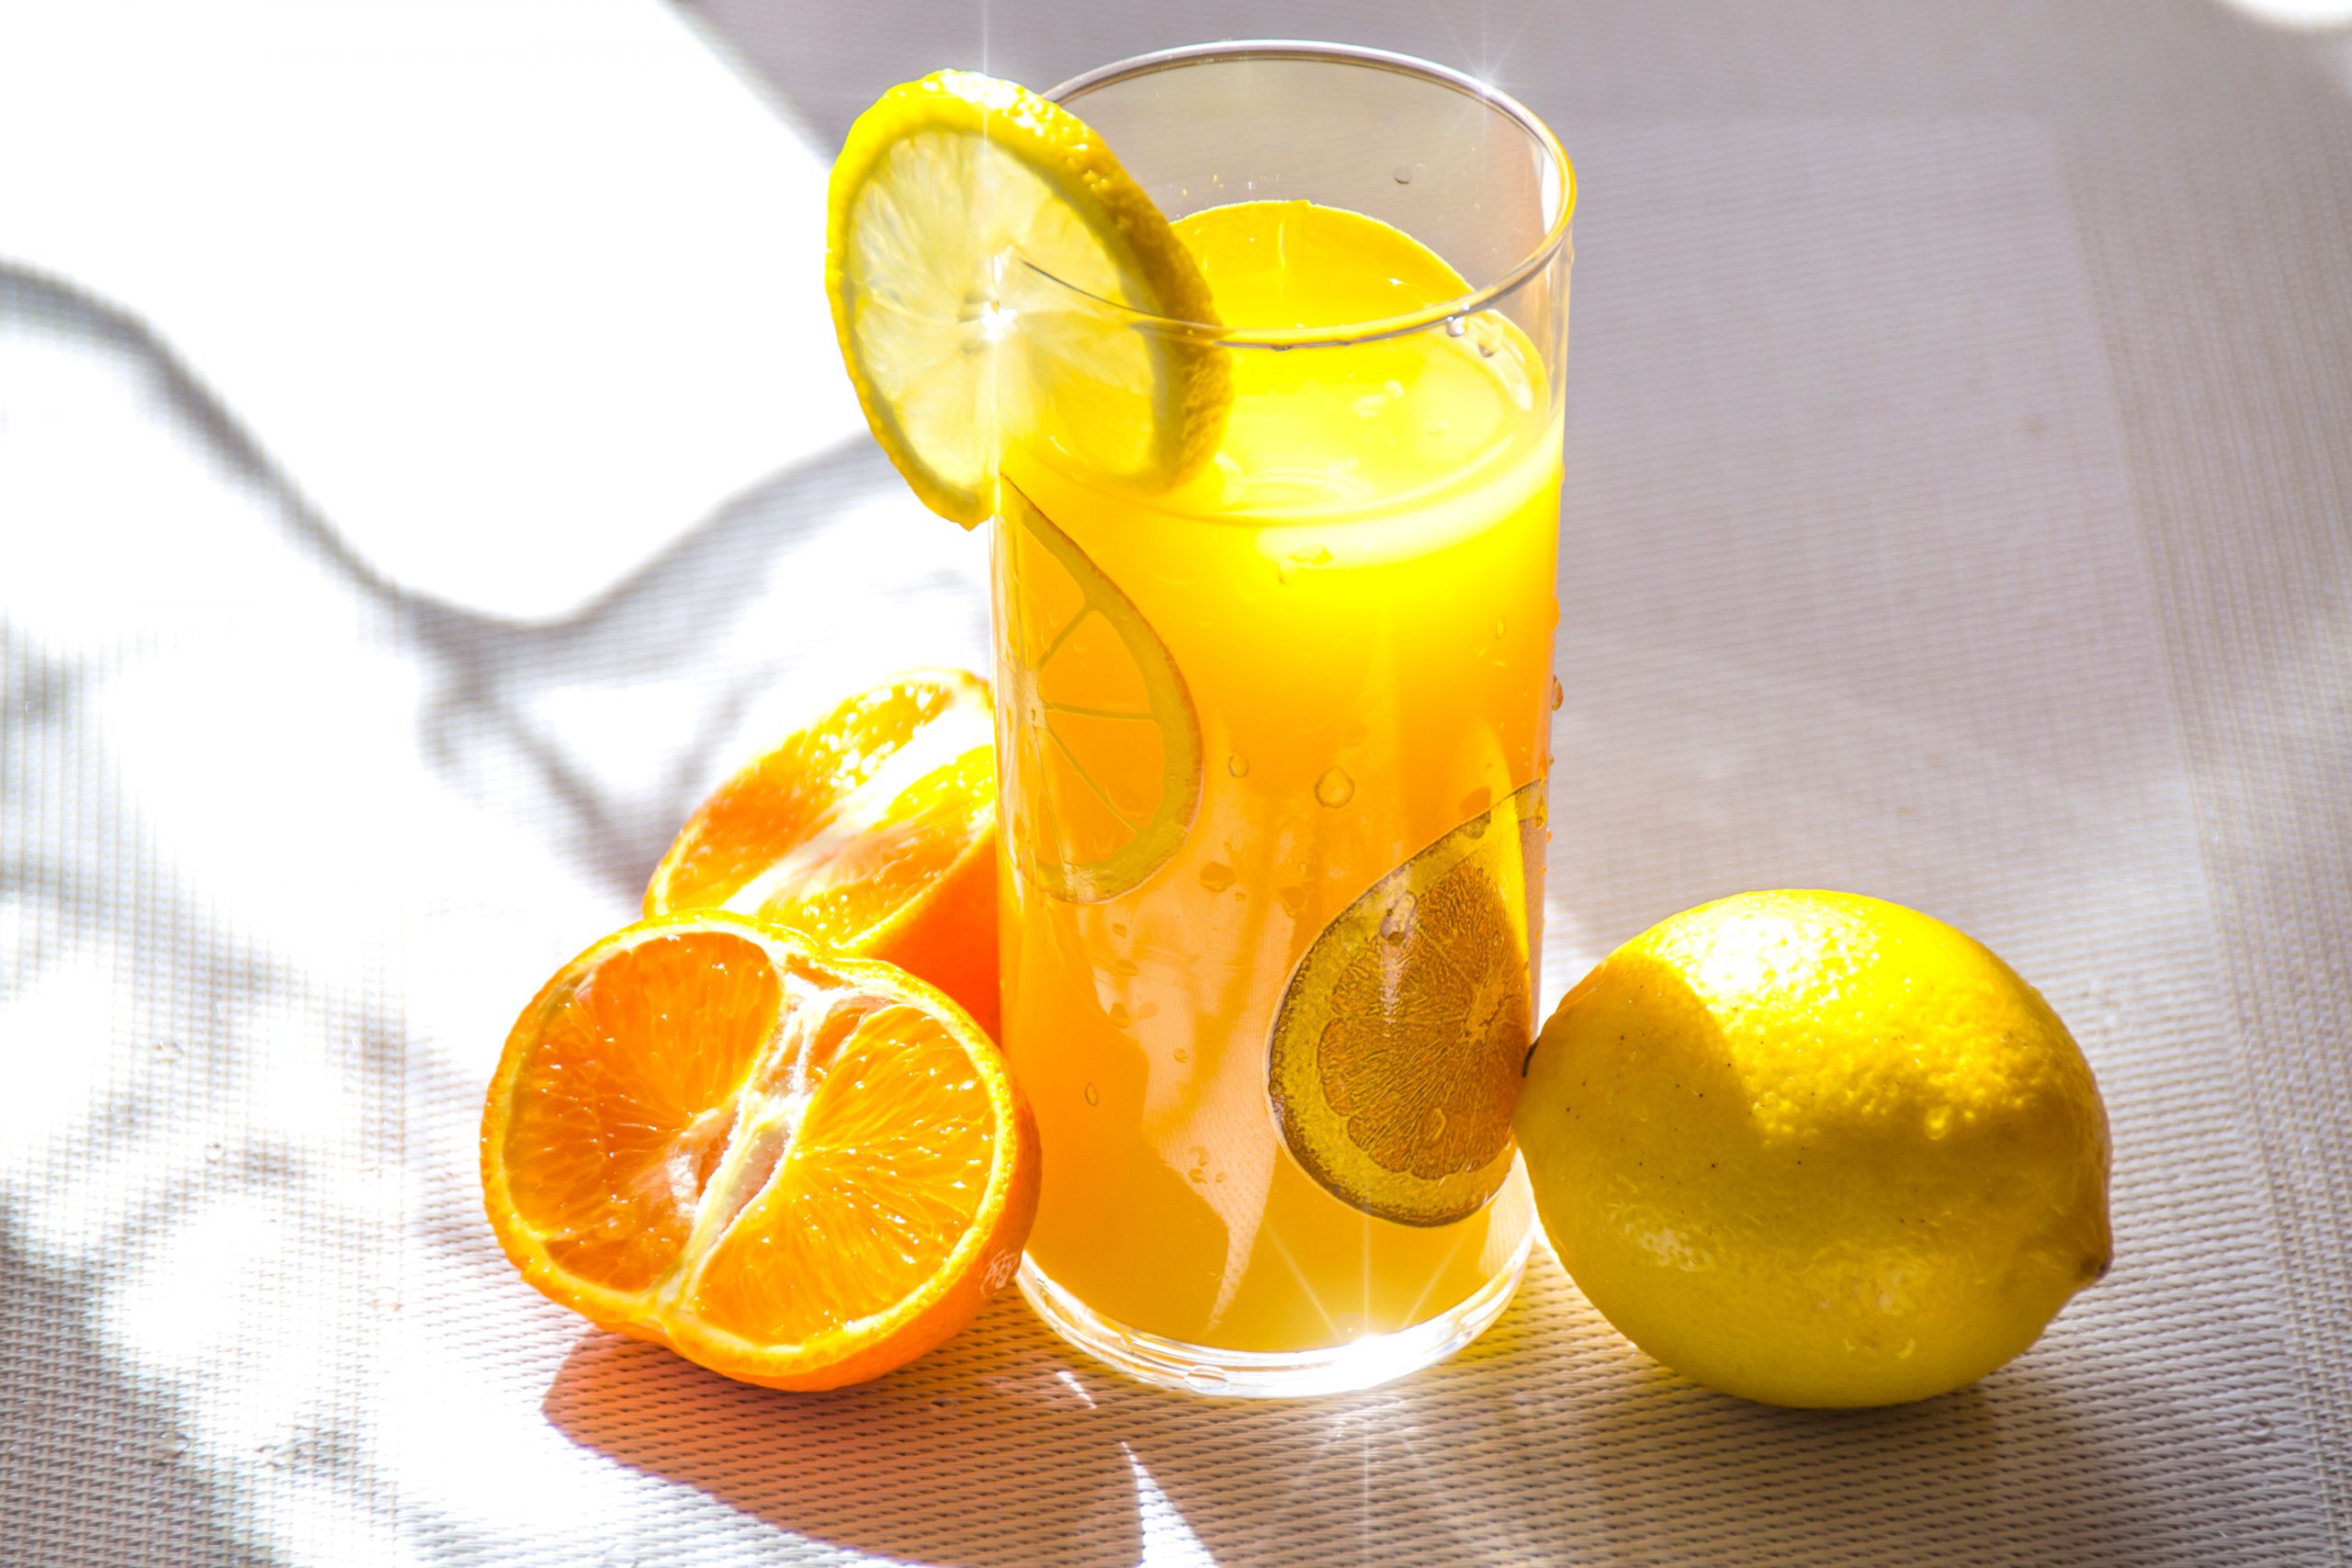 C vitamini içeren meyve ve sebzeler zinde kalmaya yardımcı oluyor